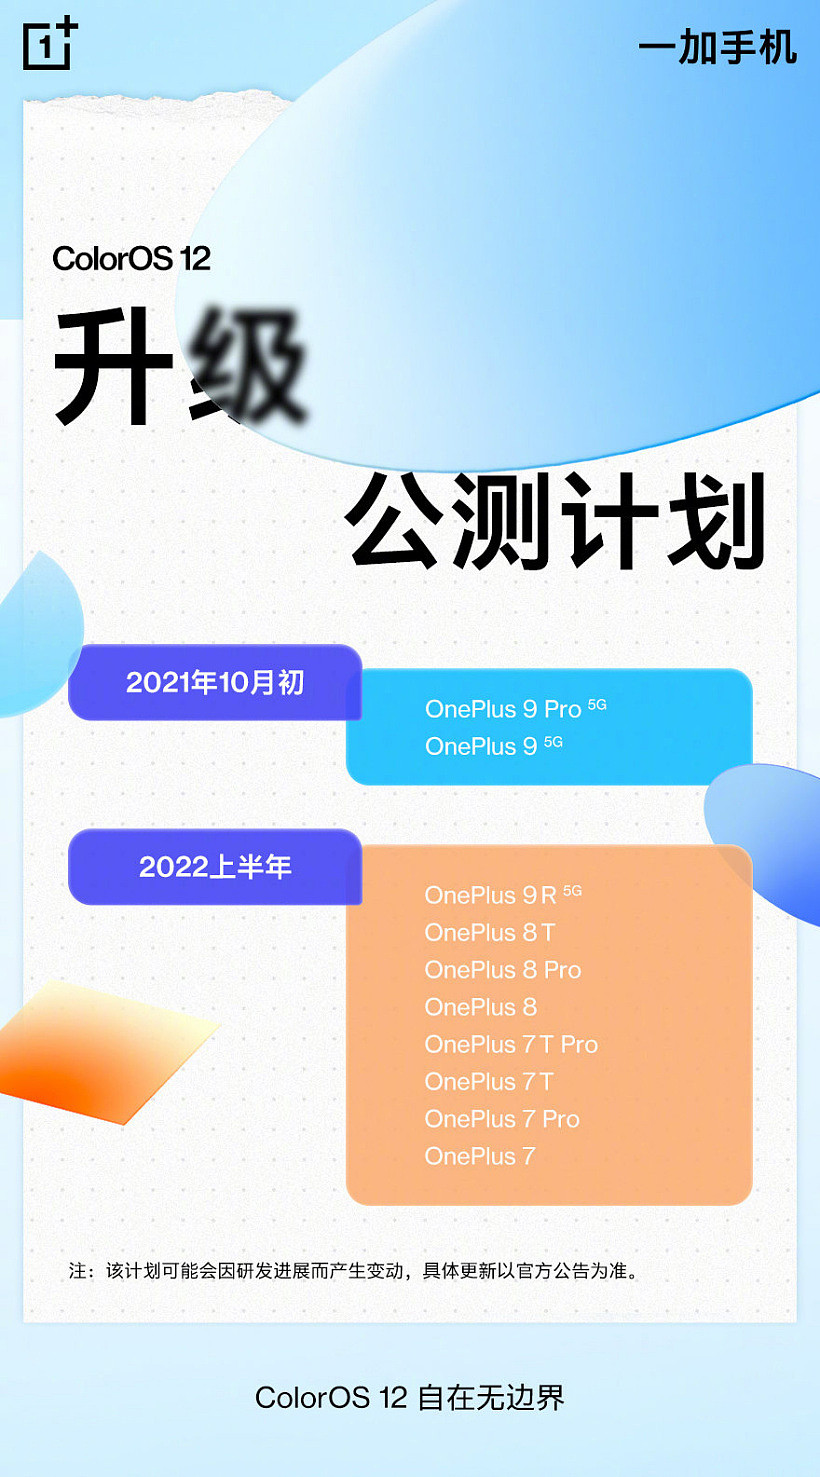 一加公布 ColorOS 12 具体升级计划：9R 将于 2022 年 1 月份公测 - 1